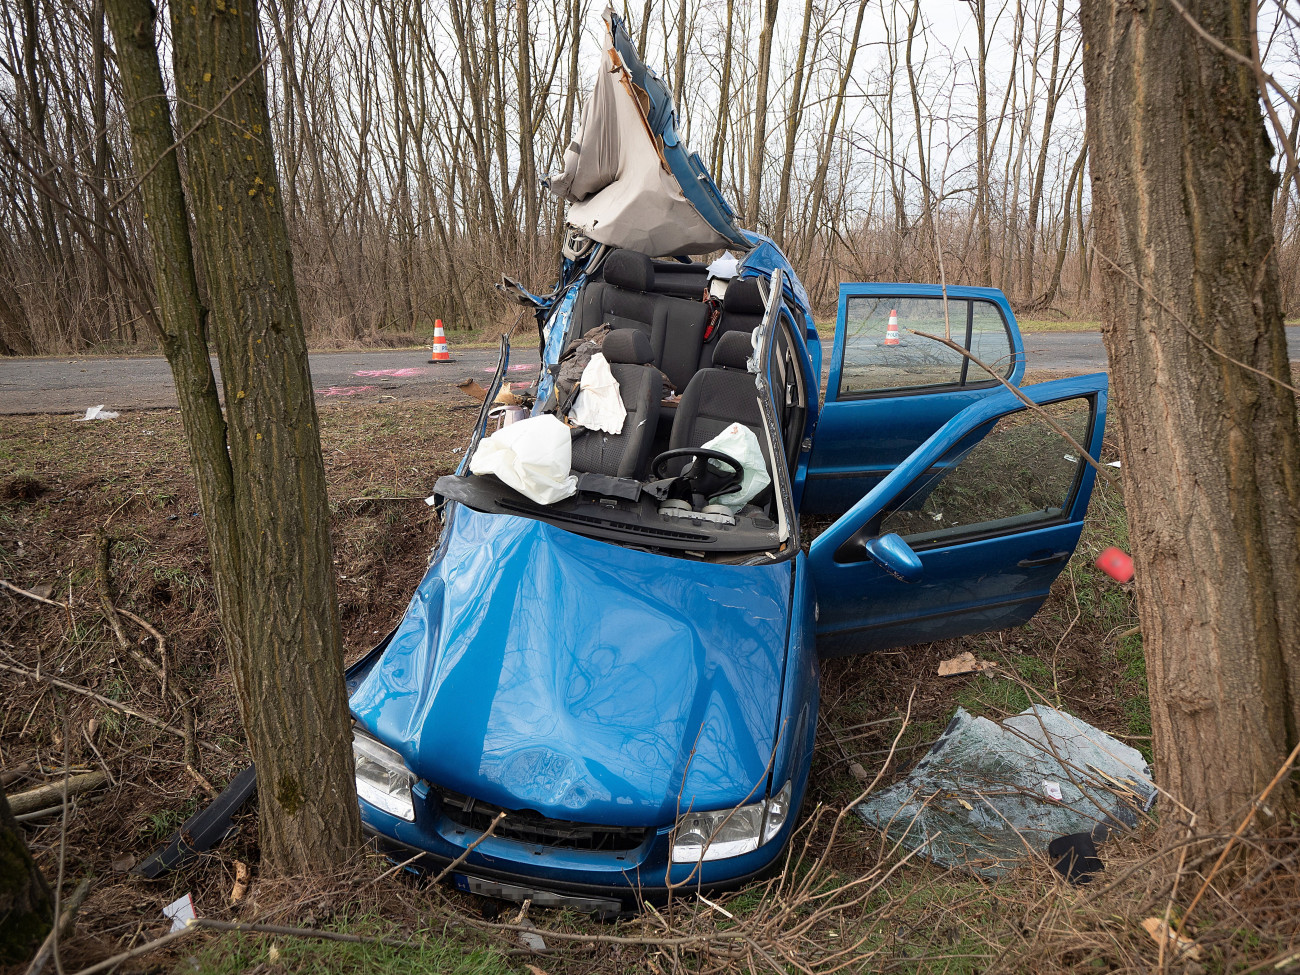 Jánoshalma, 2022. február 4.
Út menti árokba csapódott személygépkocsi a Bács-Kiskun megyei Kéleshalom és Jánoshalma között 2022. február 4-én. A balesetben az autó utasa, egy 14 éves lány életét vesztette. Az autót vezető 19 éves férfi könnyebben sérült.
MTI/Donka Ferenc